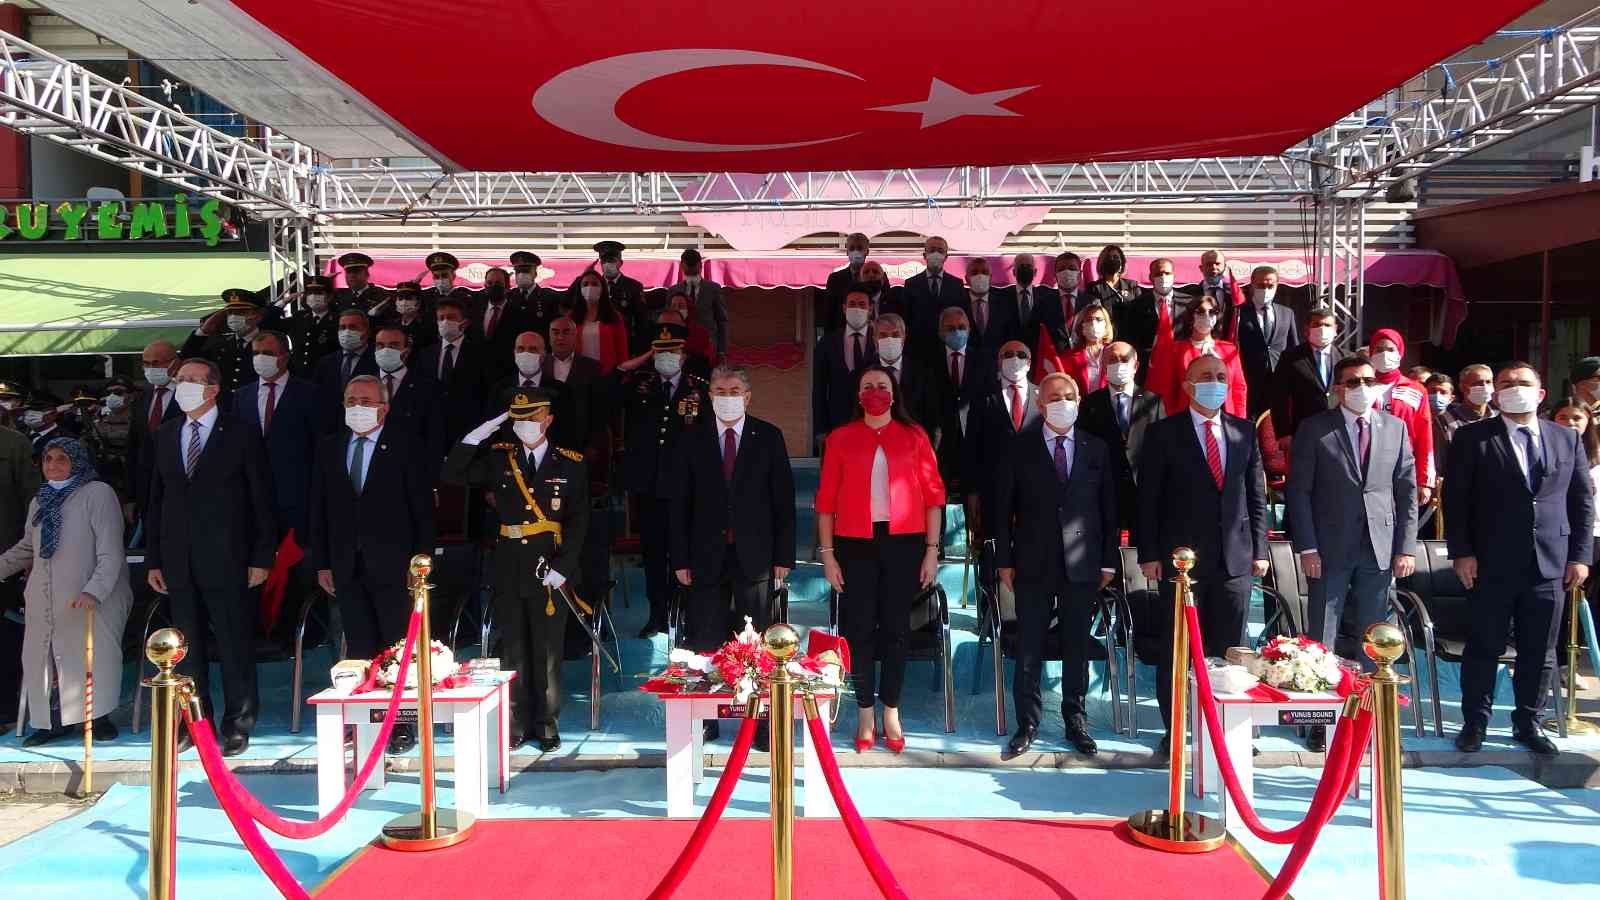 Cumhuriyetin kuruluşunun 98’inci yılı Osmaniye’de coşkuyla kutlandı #osmaniye